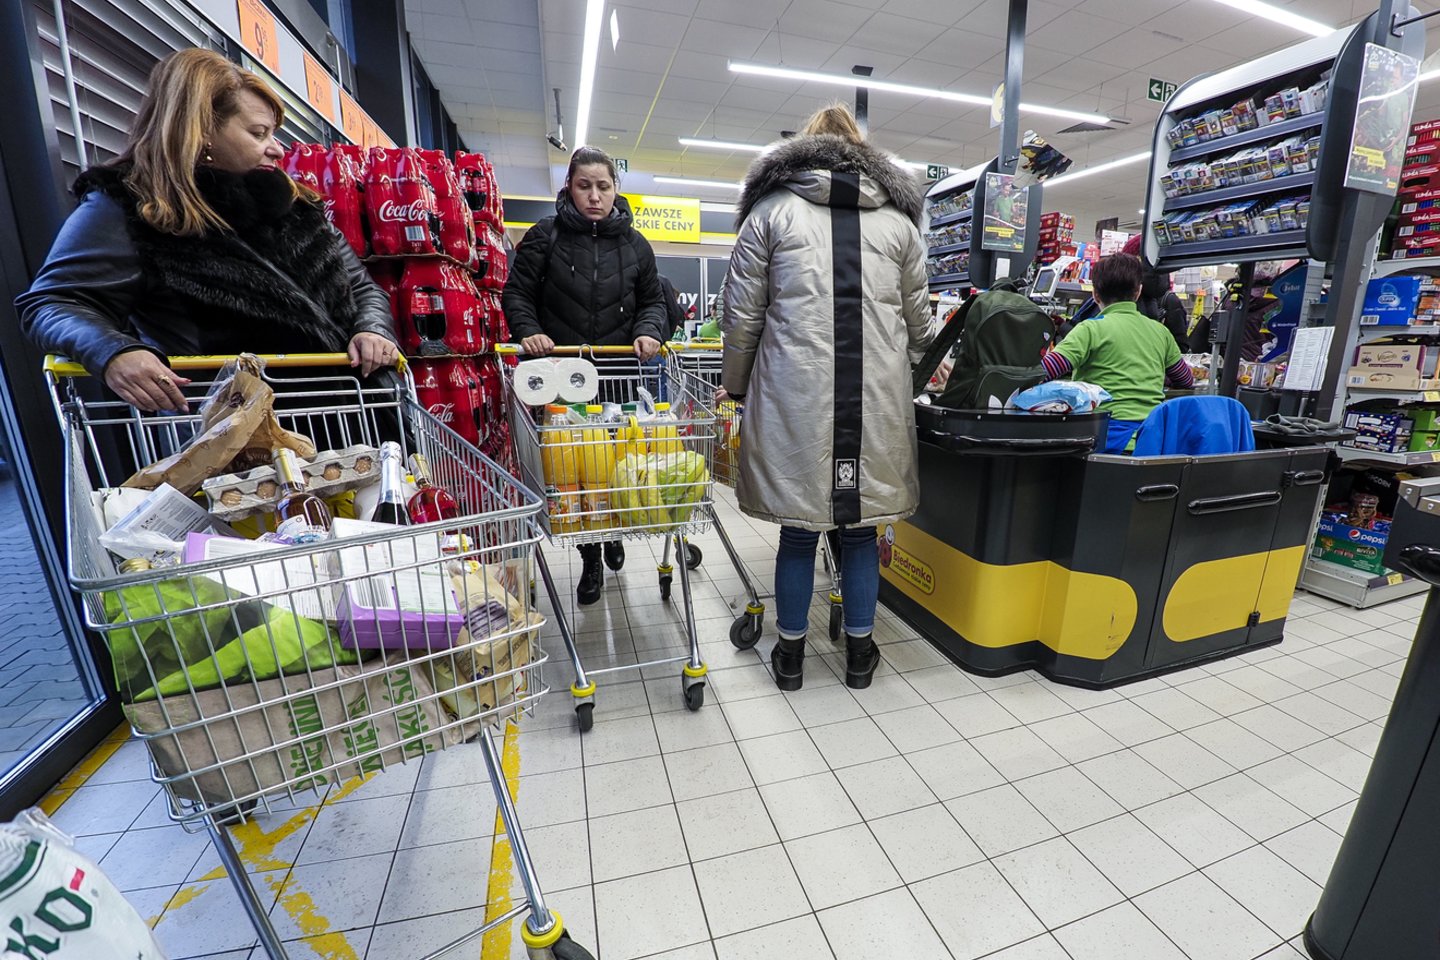 Į Lenkiją vykstantys apsipirkti lietuviai turėtų suklusti: net 45 proc. čia siūlomų prieskonių yra blogos kokybės arba jų etiketėse nurodyta neteisinga sudėtis.<br>V.Ščiavinsko nuotr.